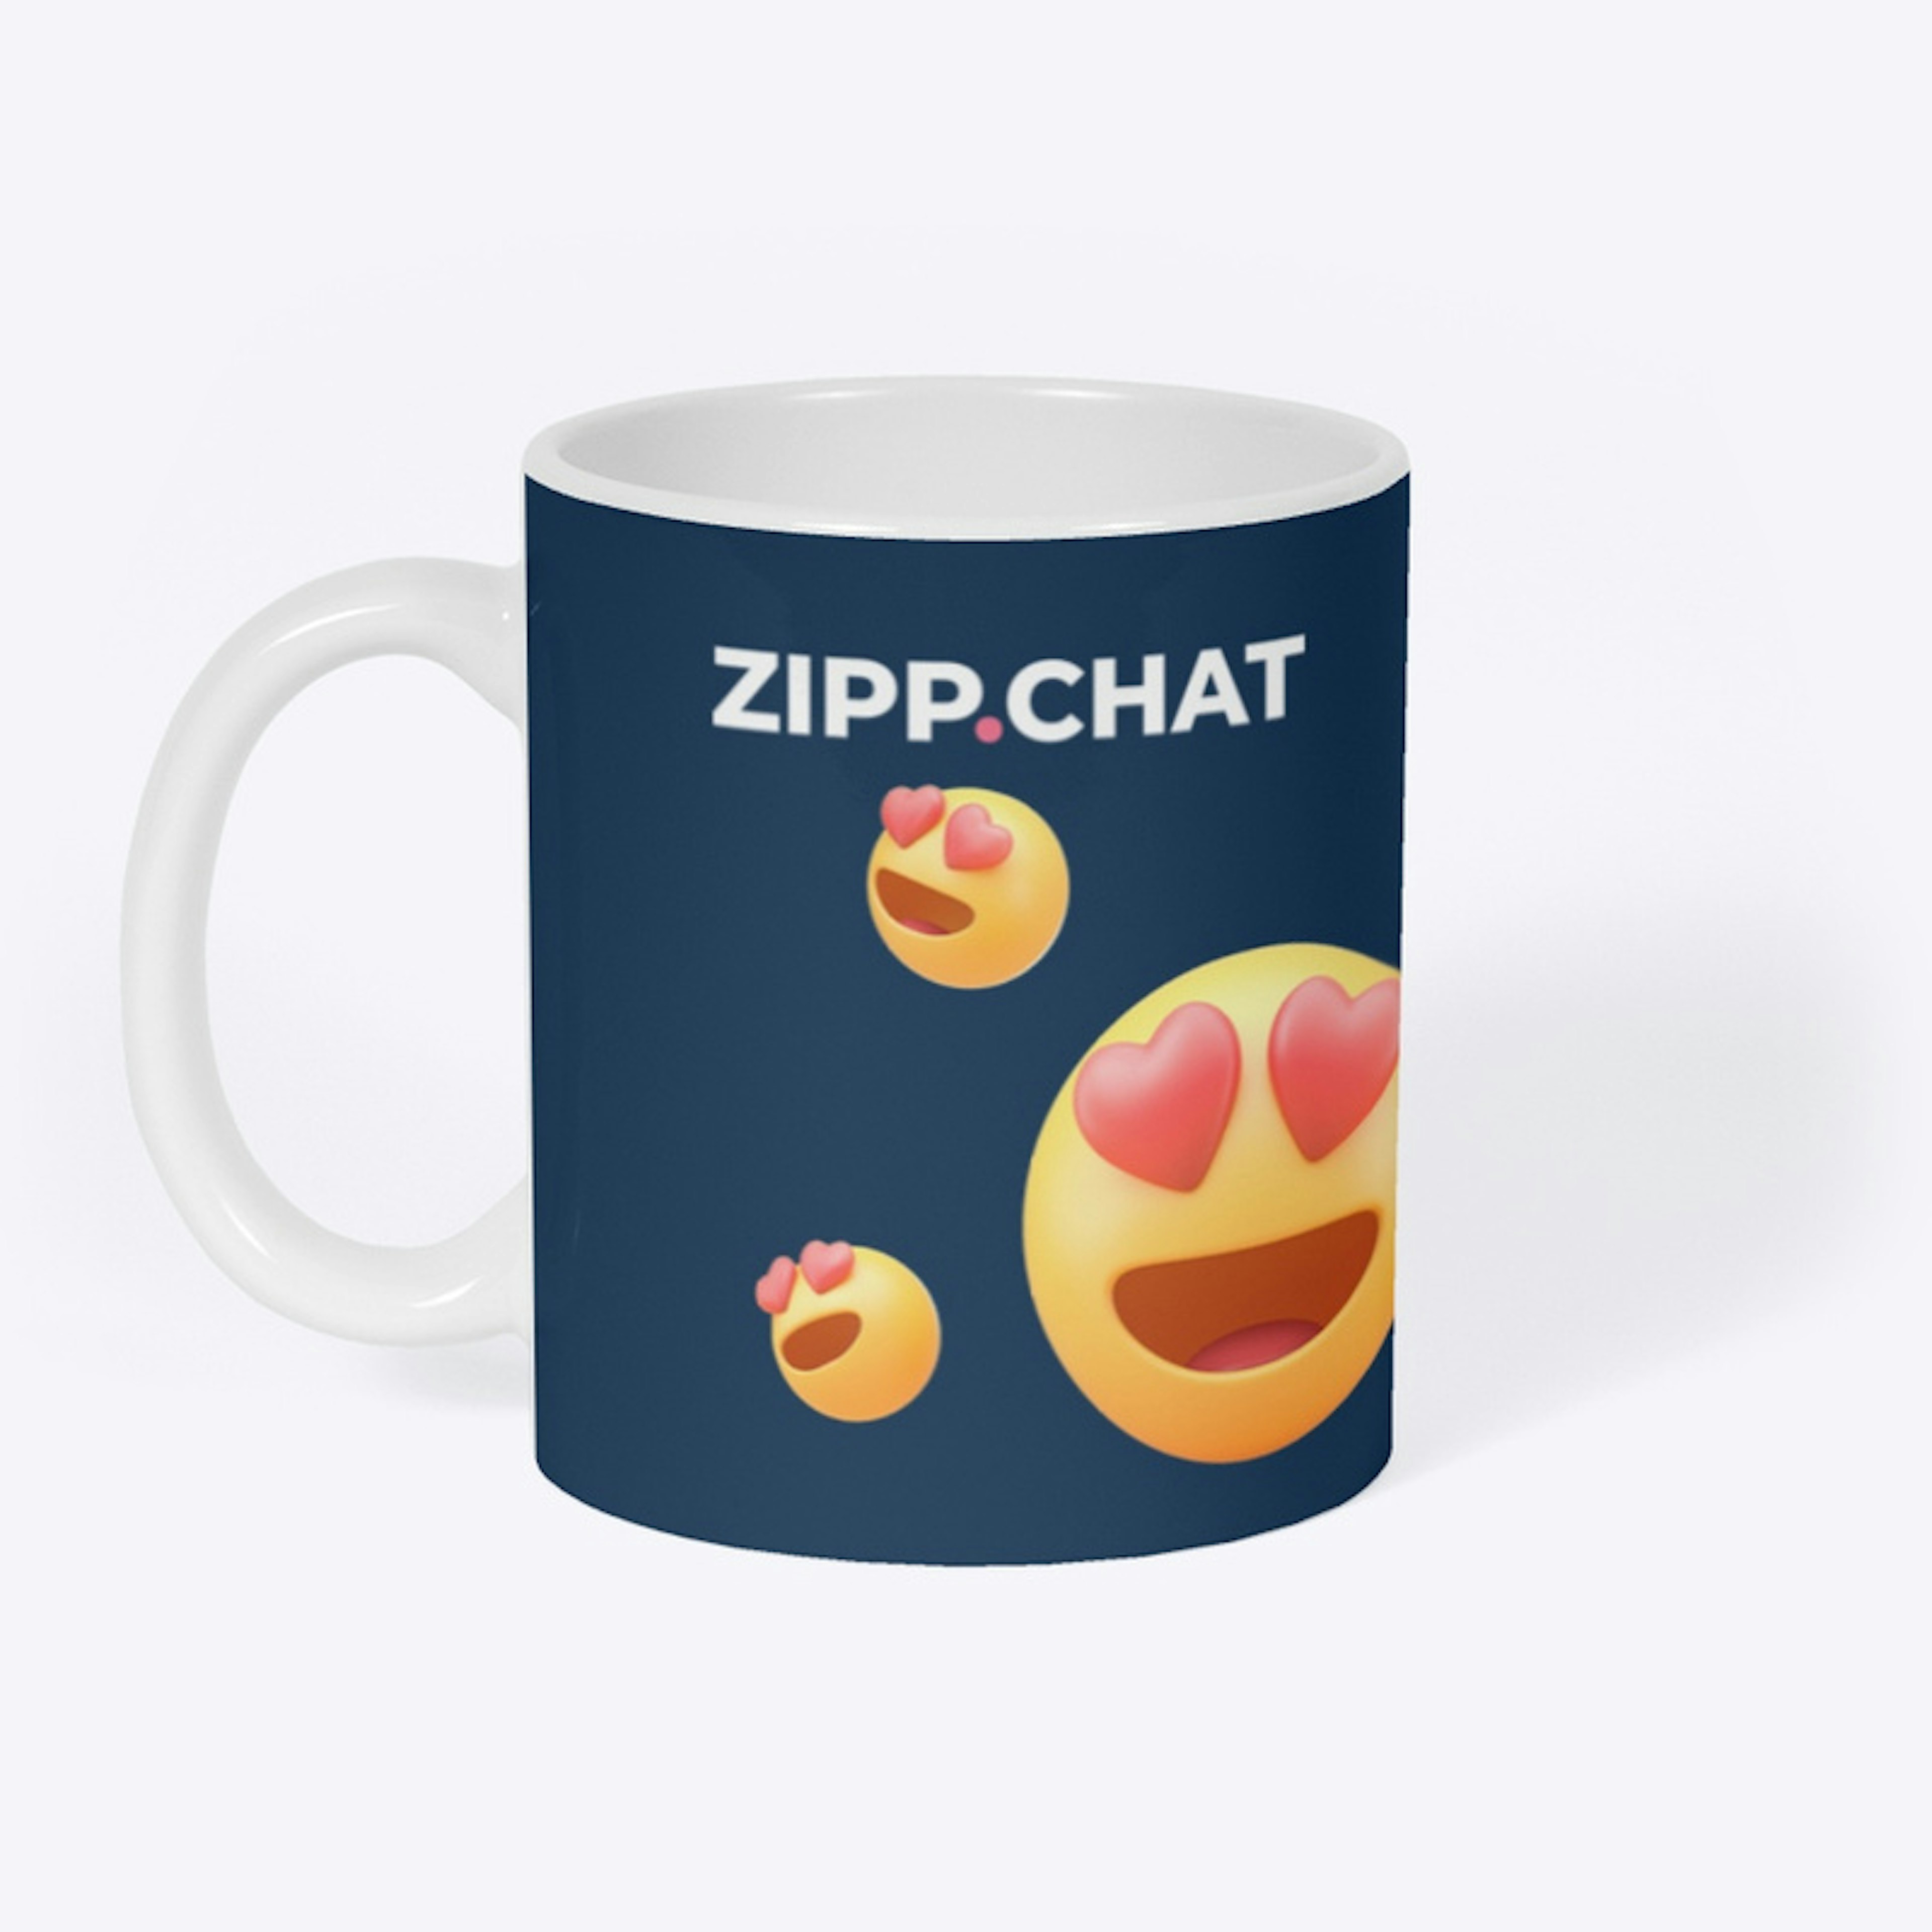 zipp.chat - Smile